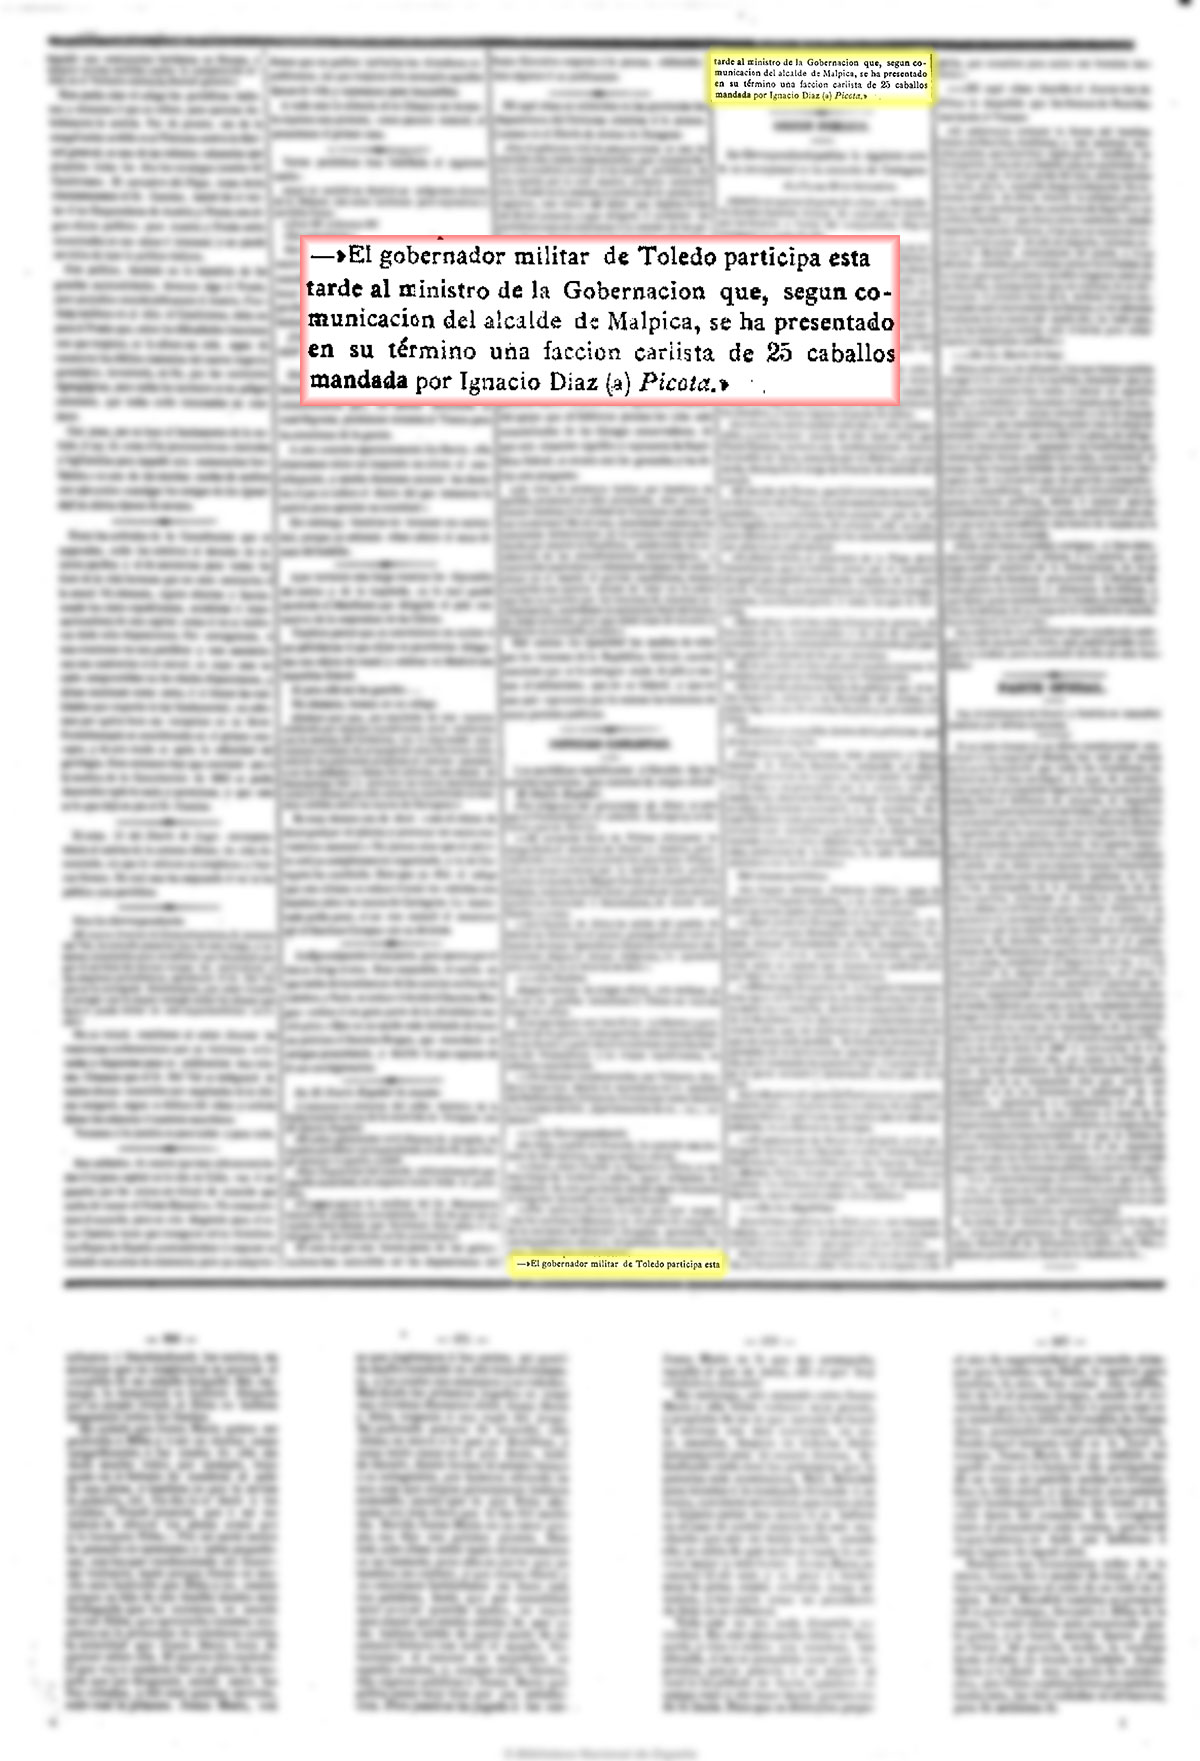 La Esperanza. 25/9/1873, página 2. Segunda guerra carlista.